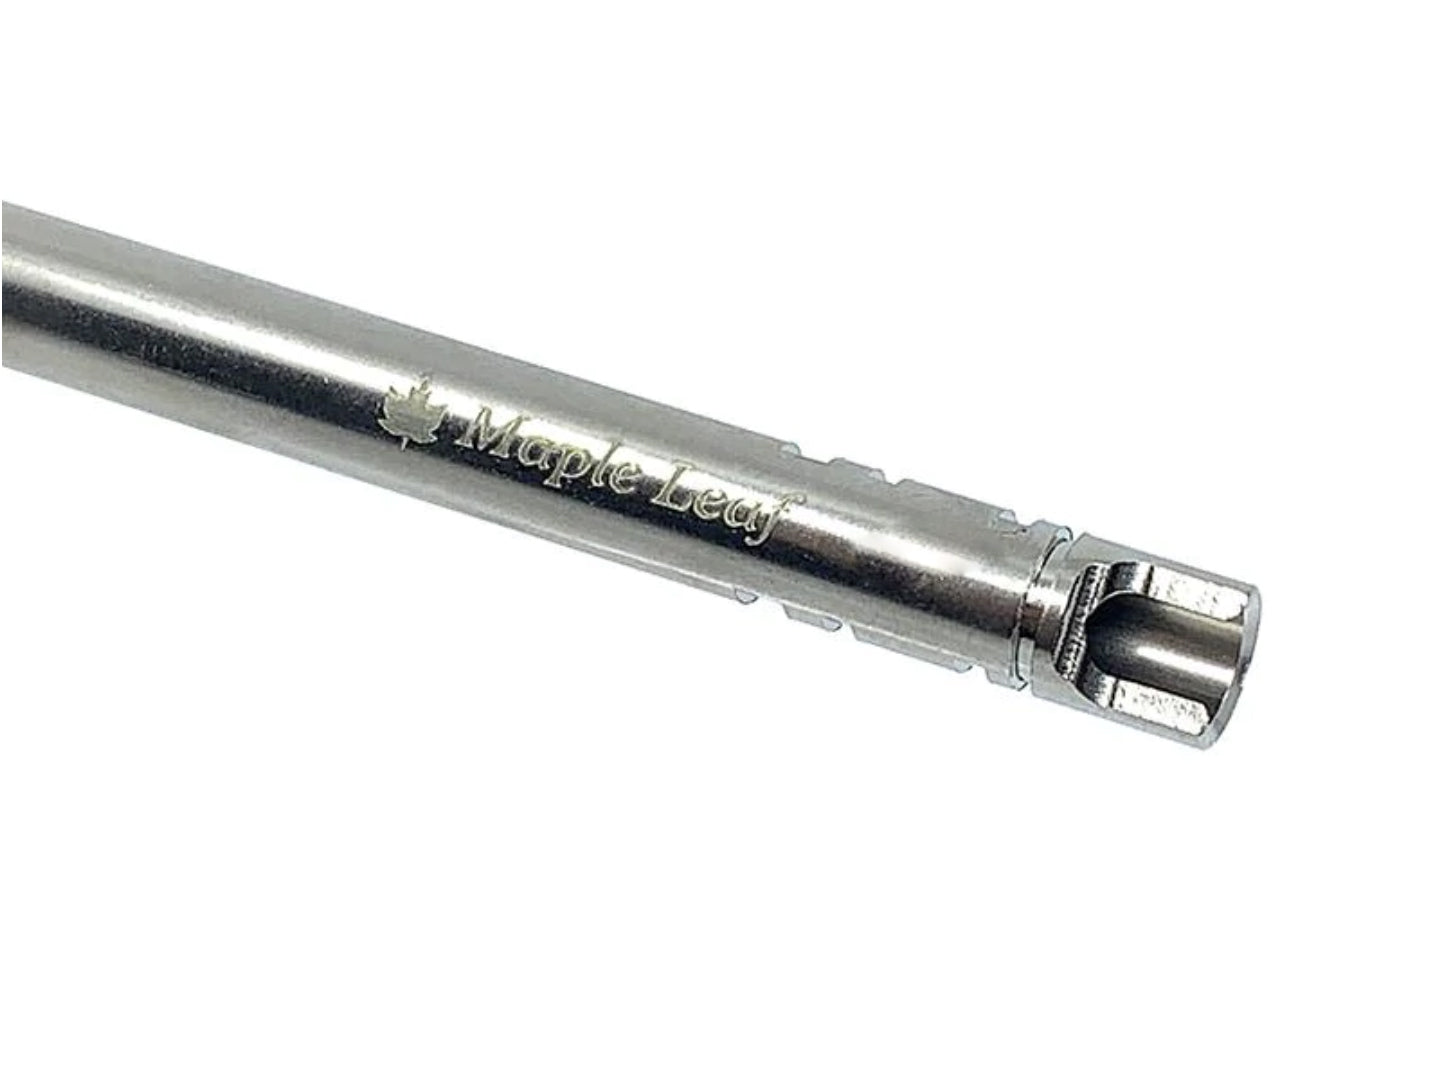 Maple Leaf 6.04mm Crazy Jet Inner Barrel (117mm) for Marui / Stark Arms / WE / KJW GBB Pistol